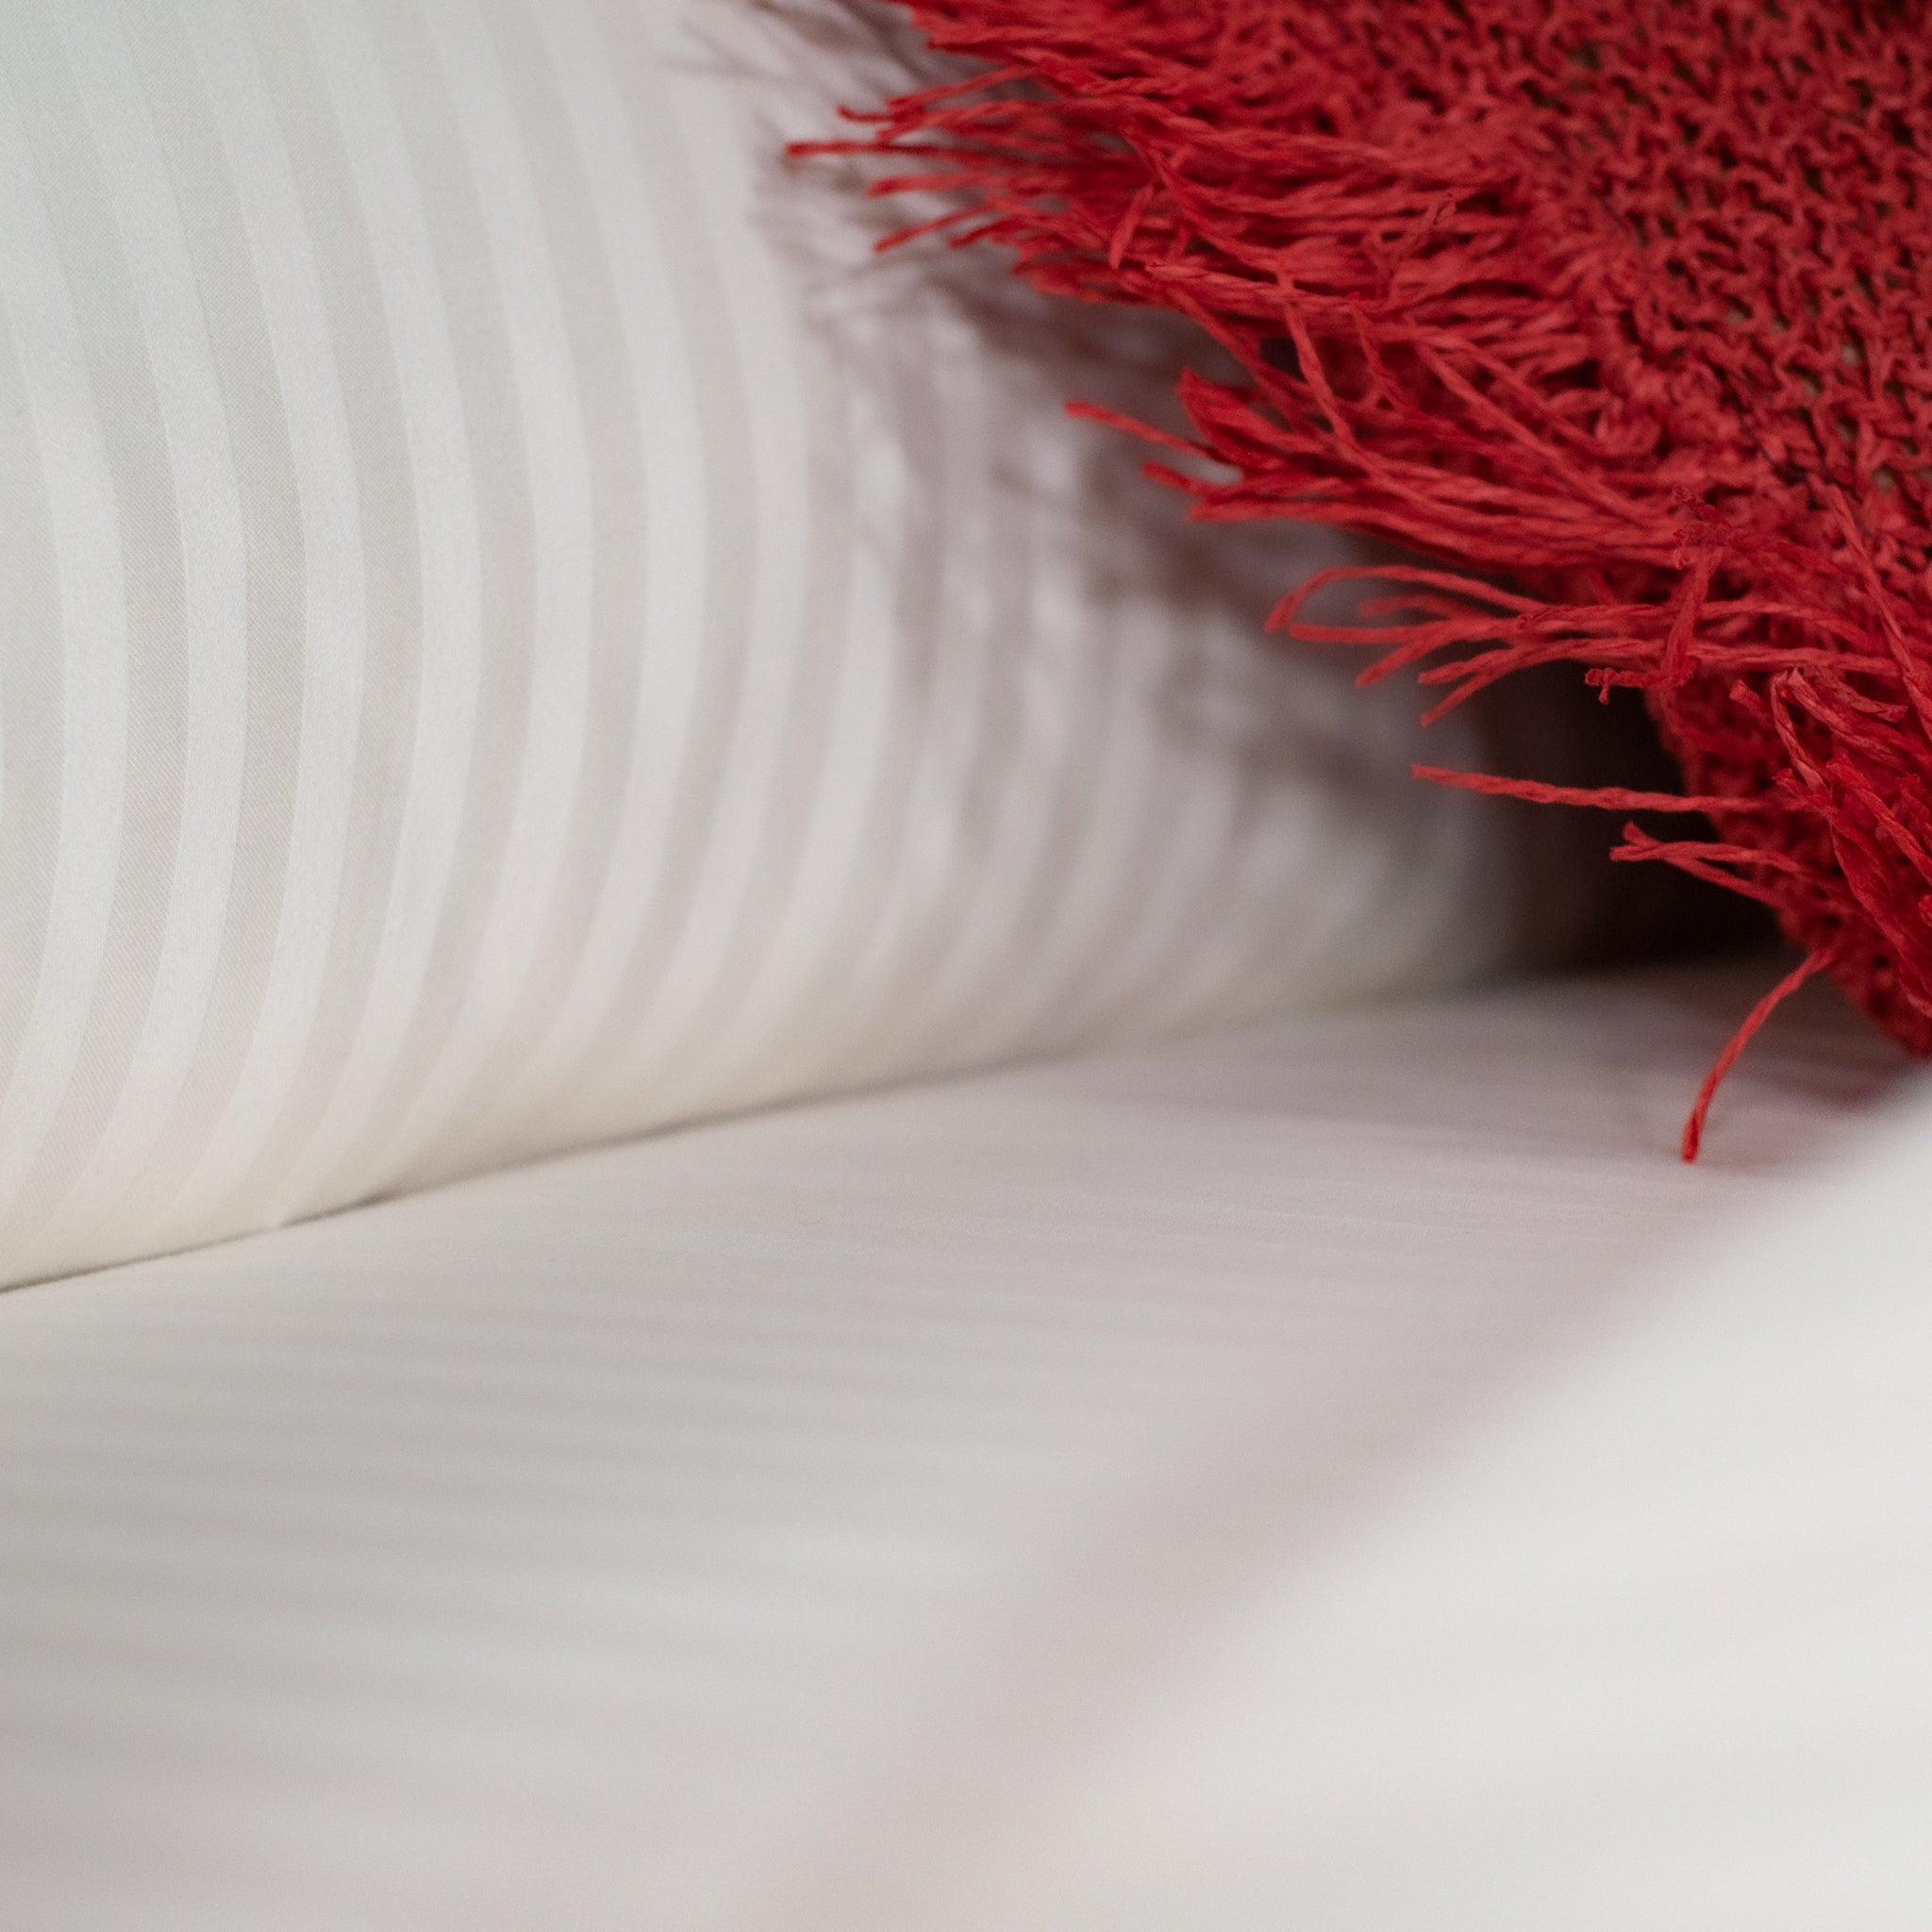 Pearl White Striped 100% Cotton Sateen Oxford Pillowcase